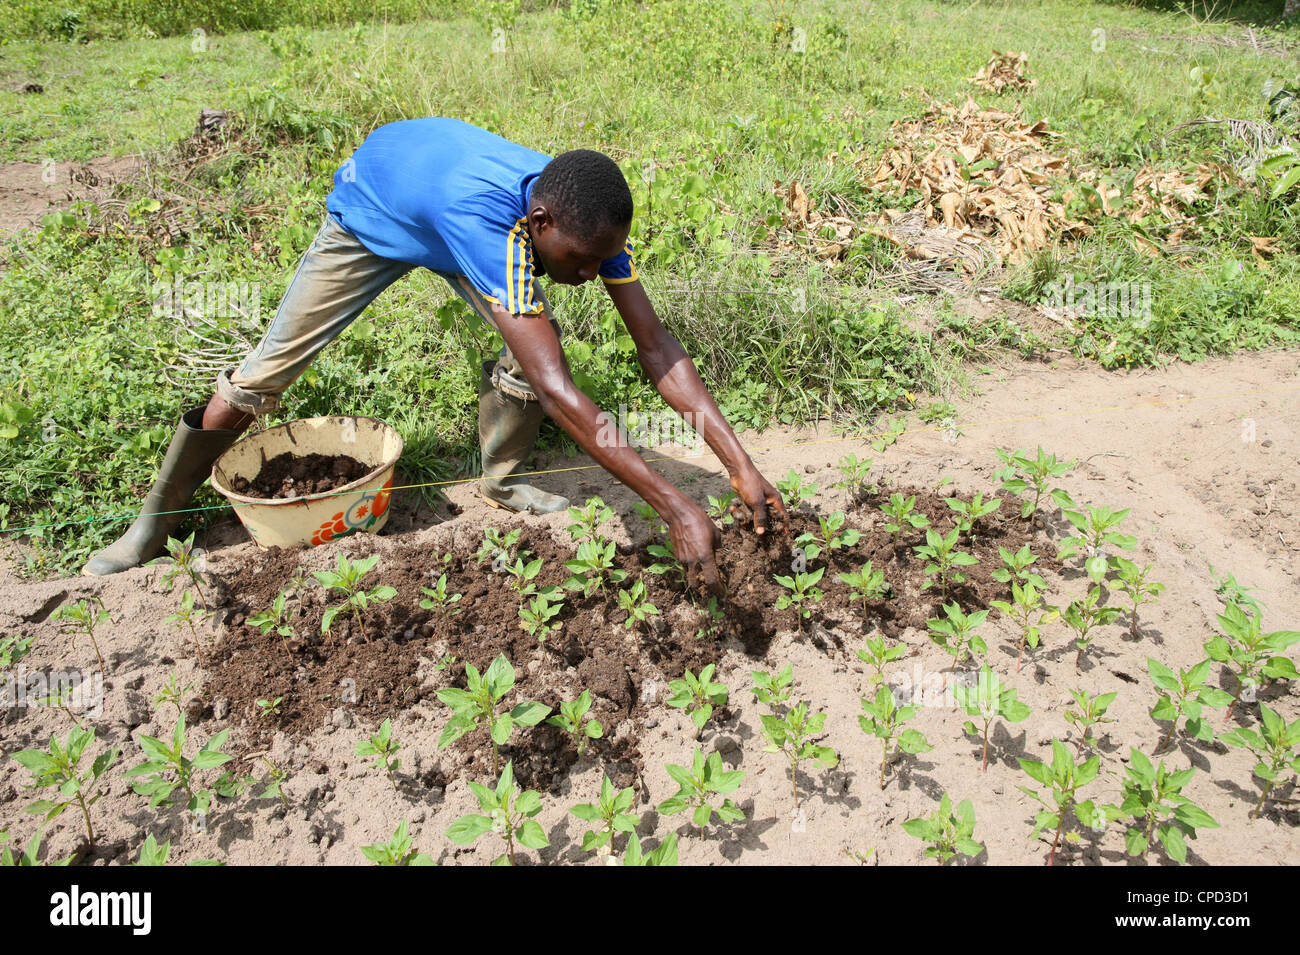 Man tending a vegetable garden, Tori, Benin, West Africa, Africa Stock Photo